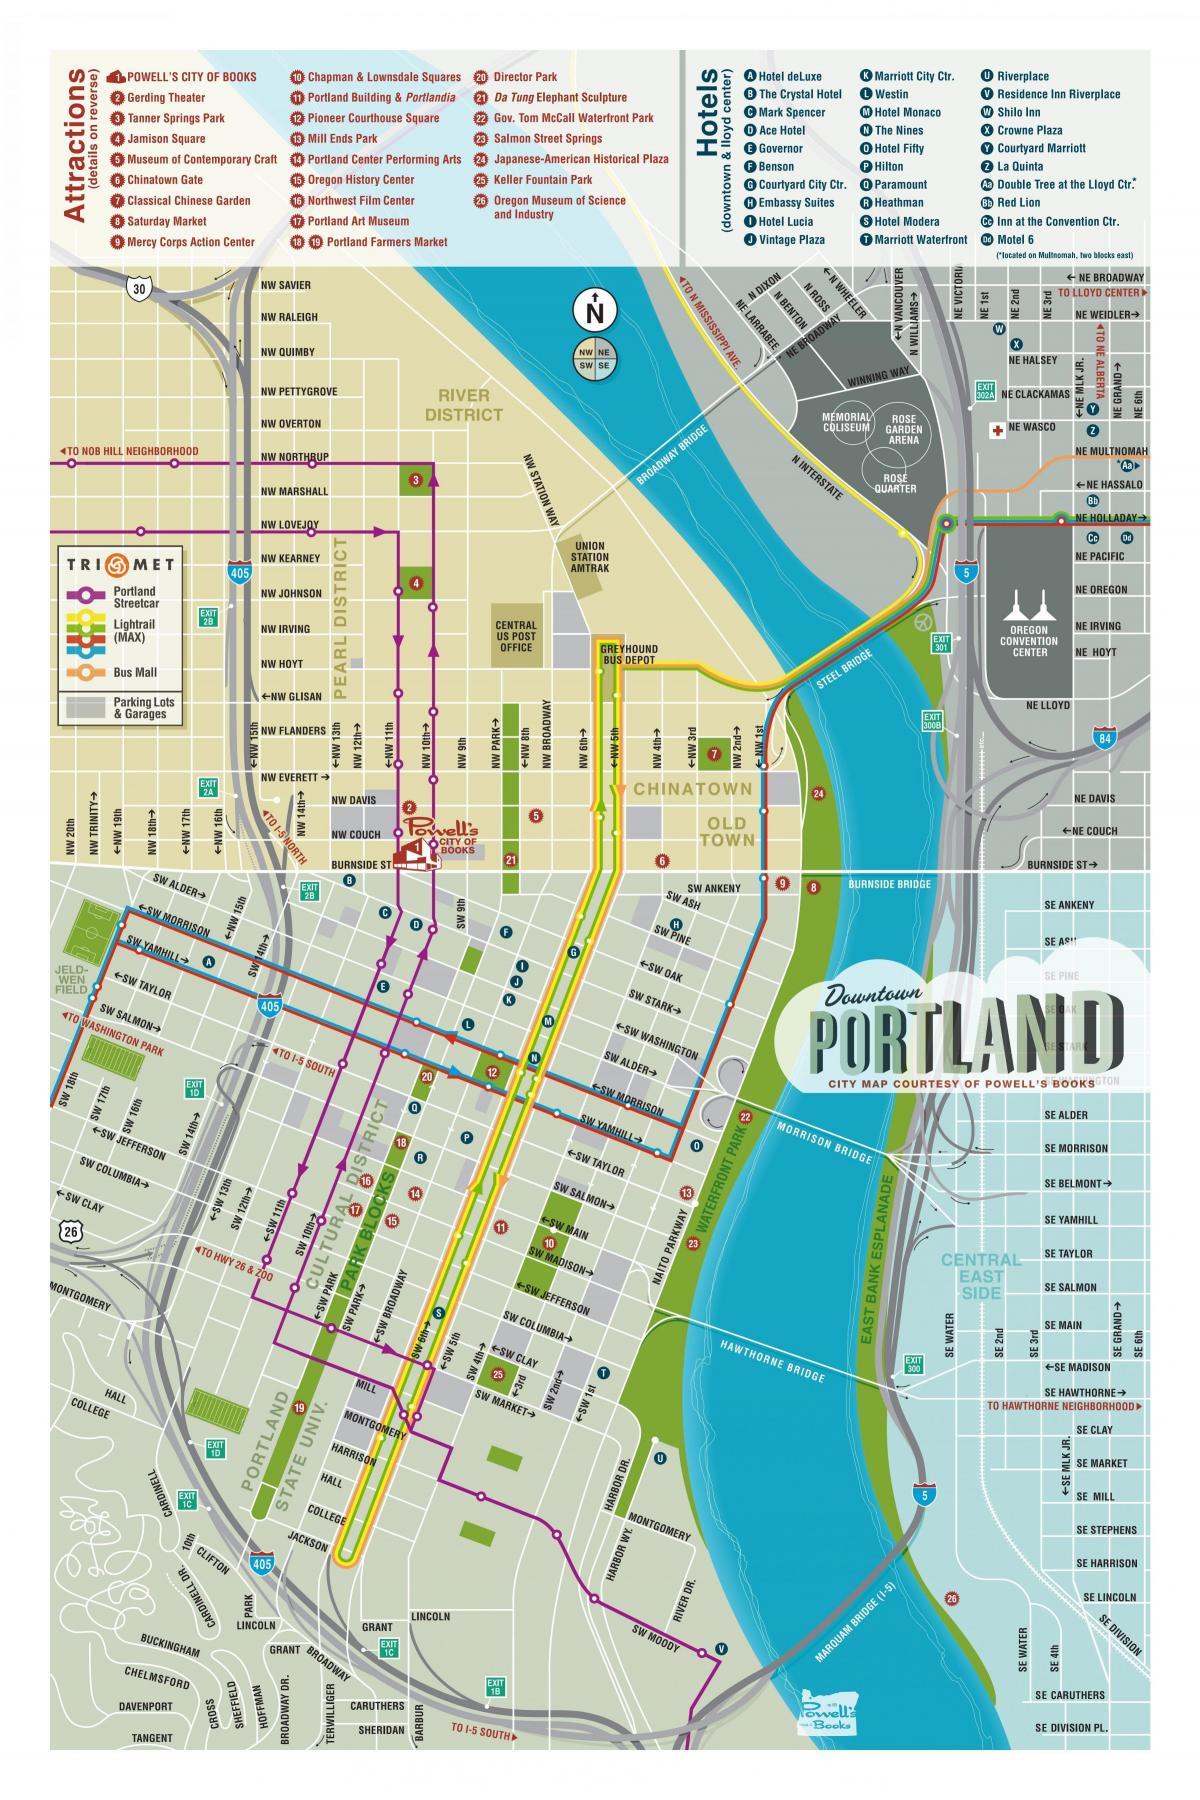 Portland mappa visite turistiche